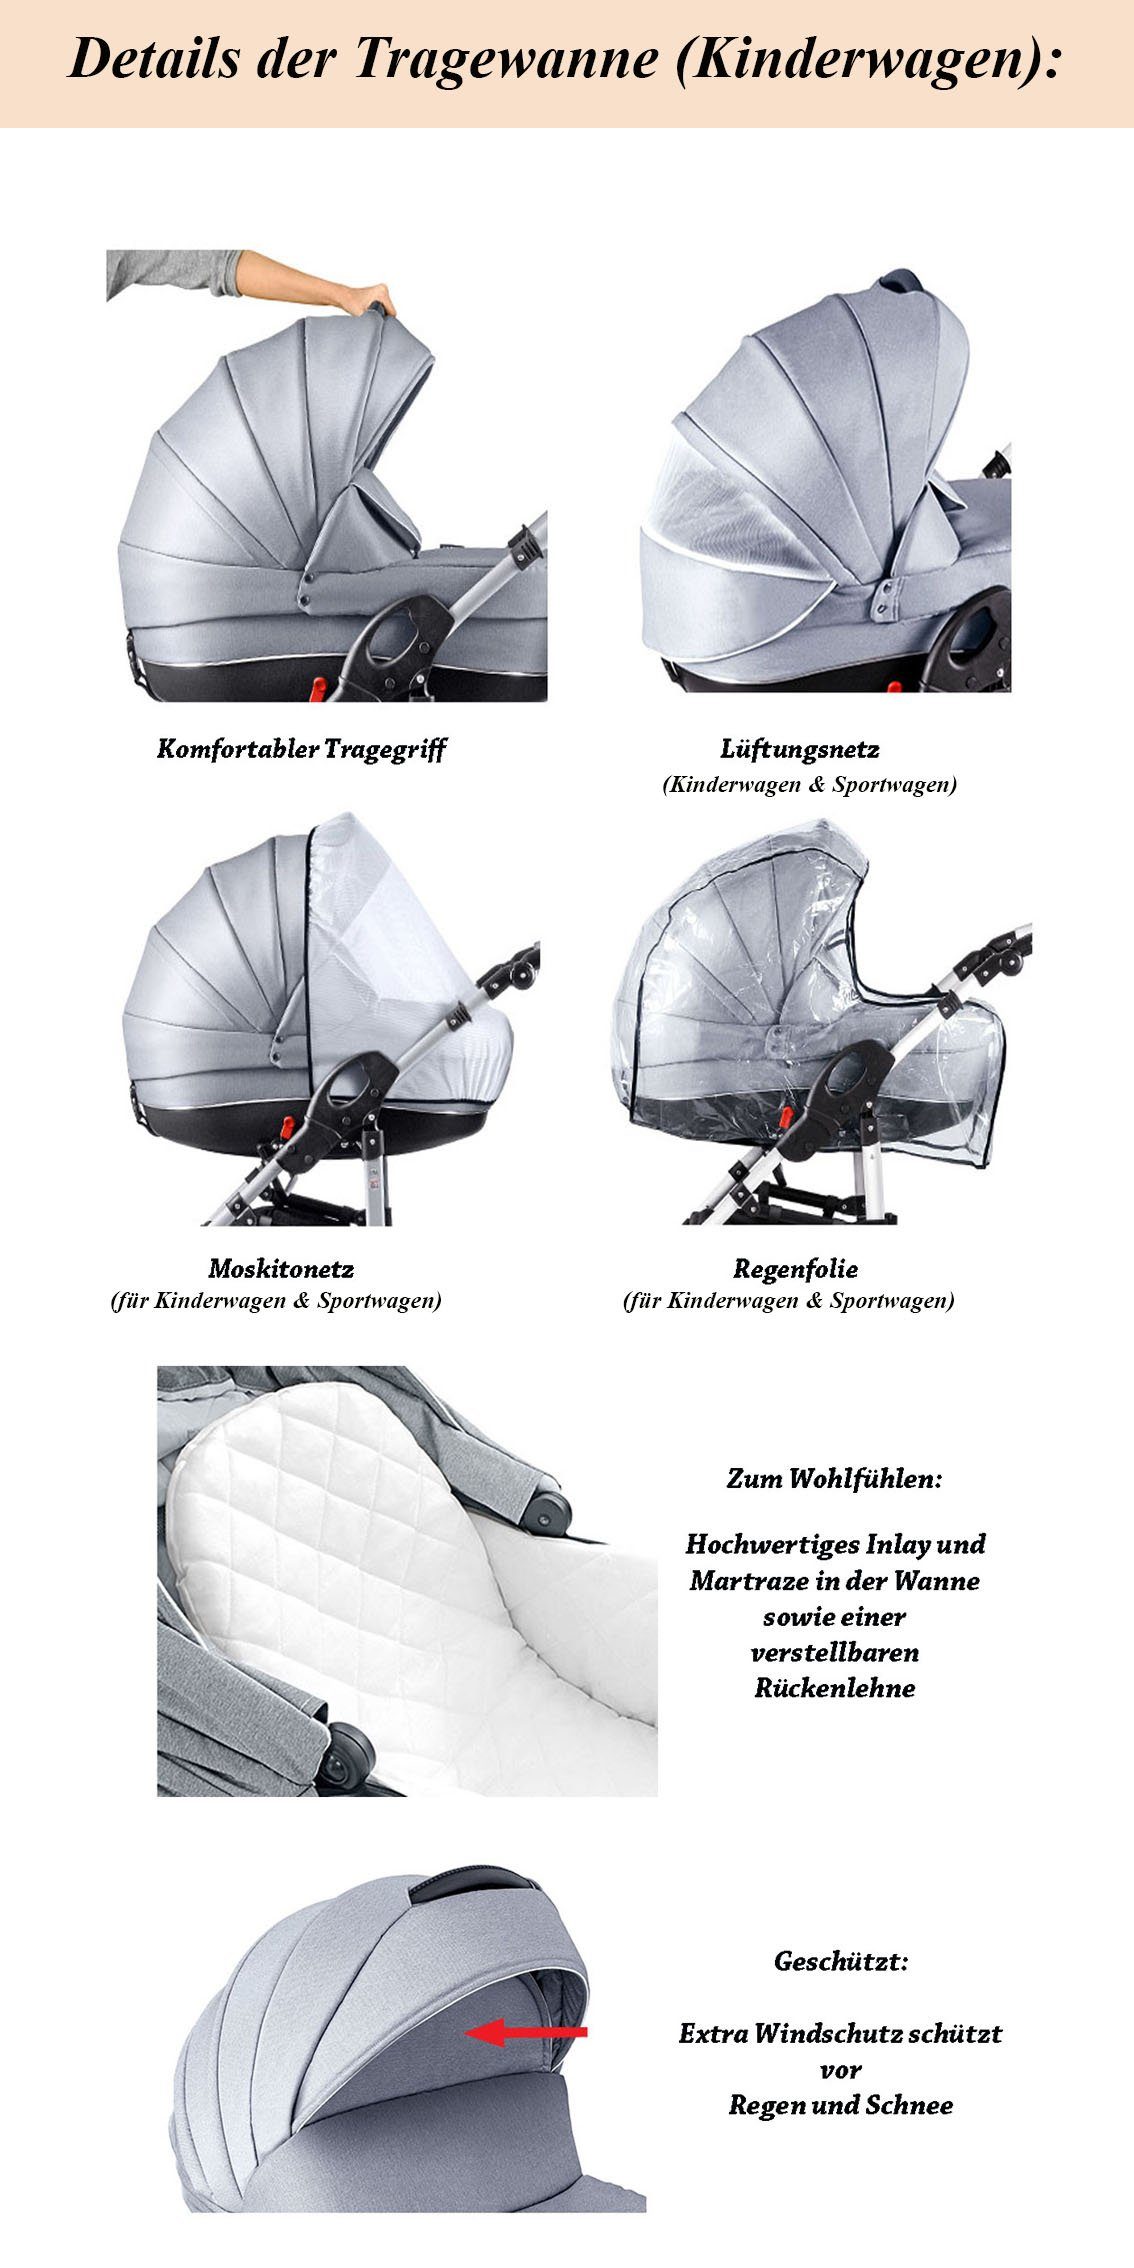 ECO 16 - babies-on-wheels Kombi-Kinderwagen Cosmo Teile Sand-Beige 3 in Kunstleder 1 Kinderwagen-Set - 29 Farben in